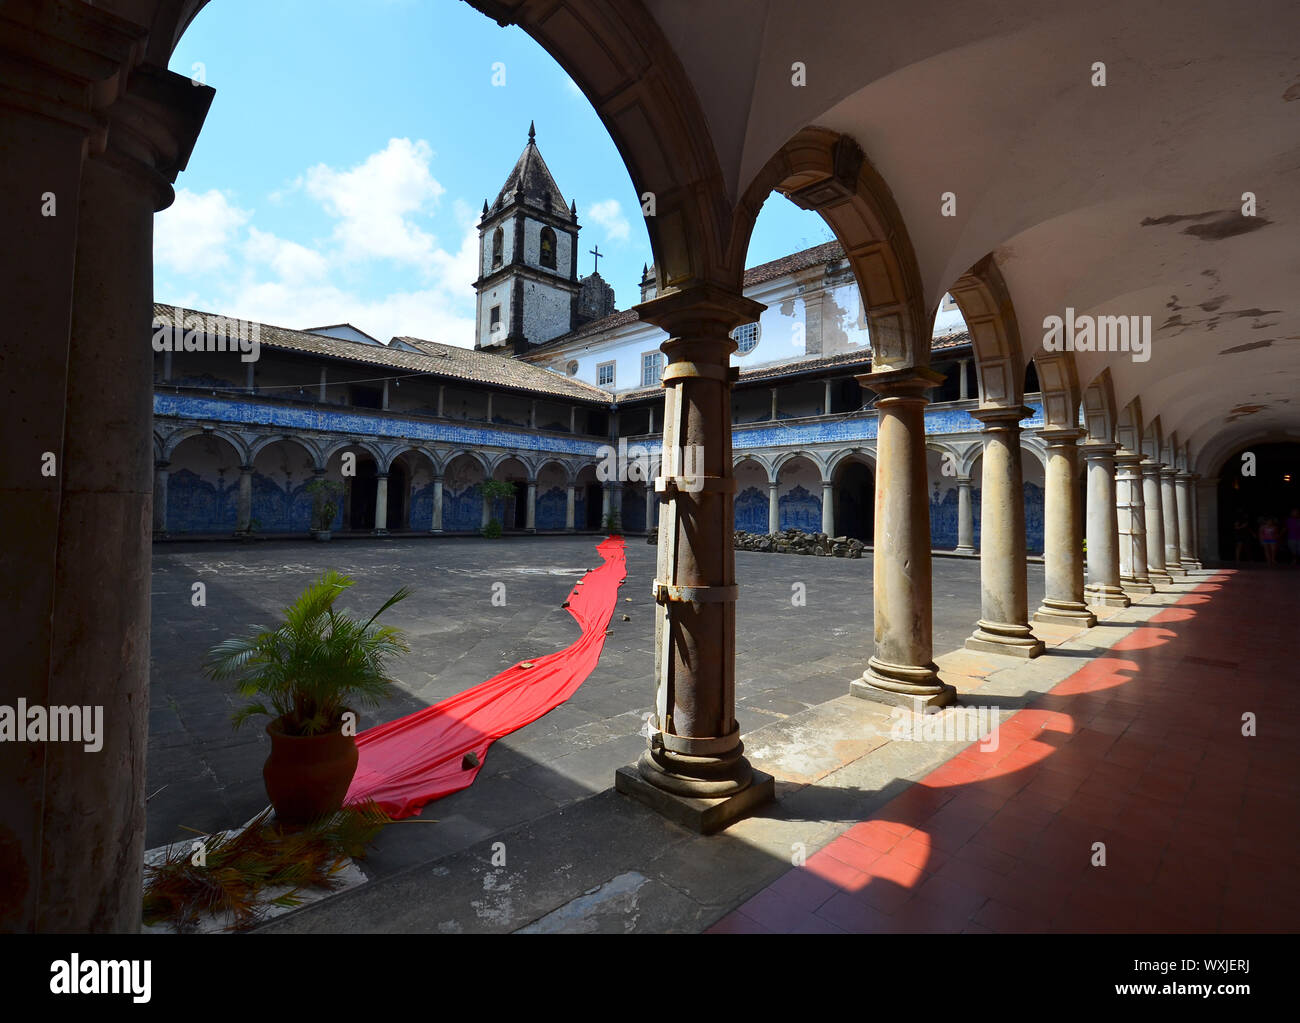 Courtyard of the Church and Convent of San Francisco. Salvador da Bahia, Brazil Stock Photo